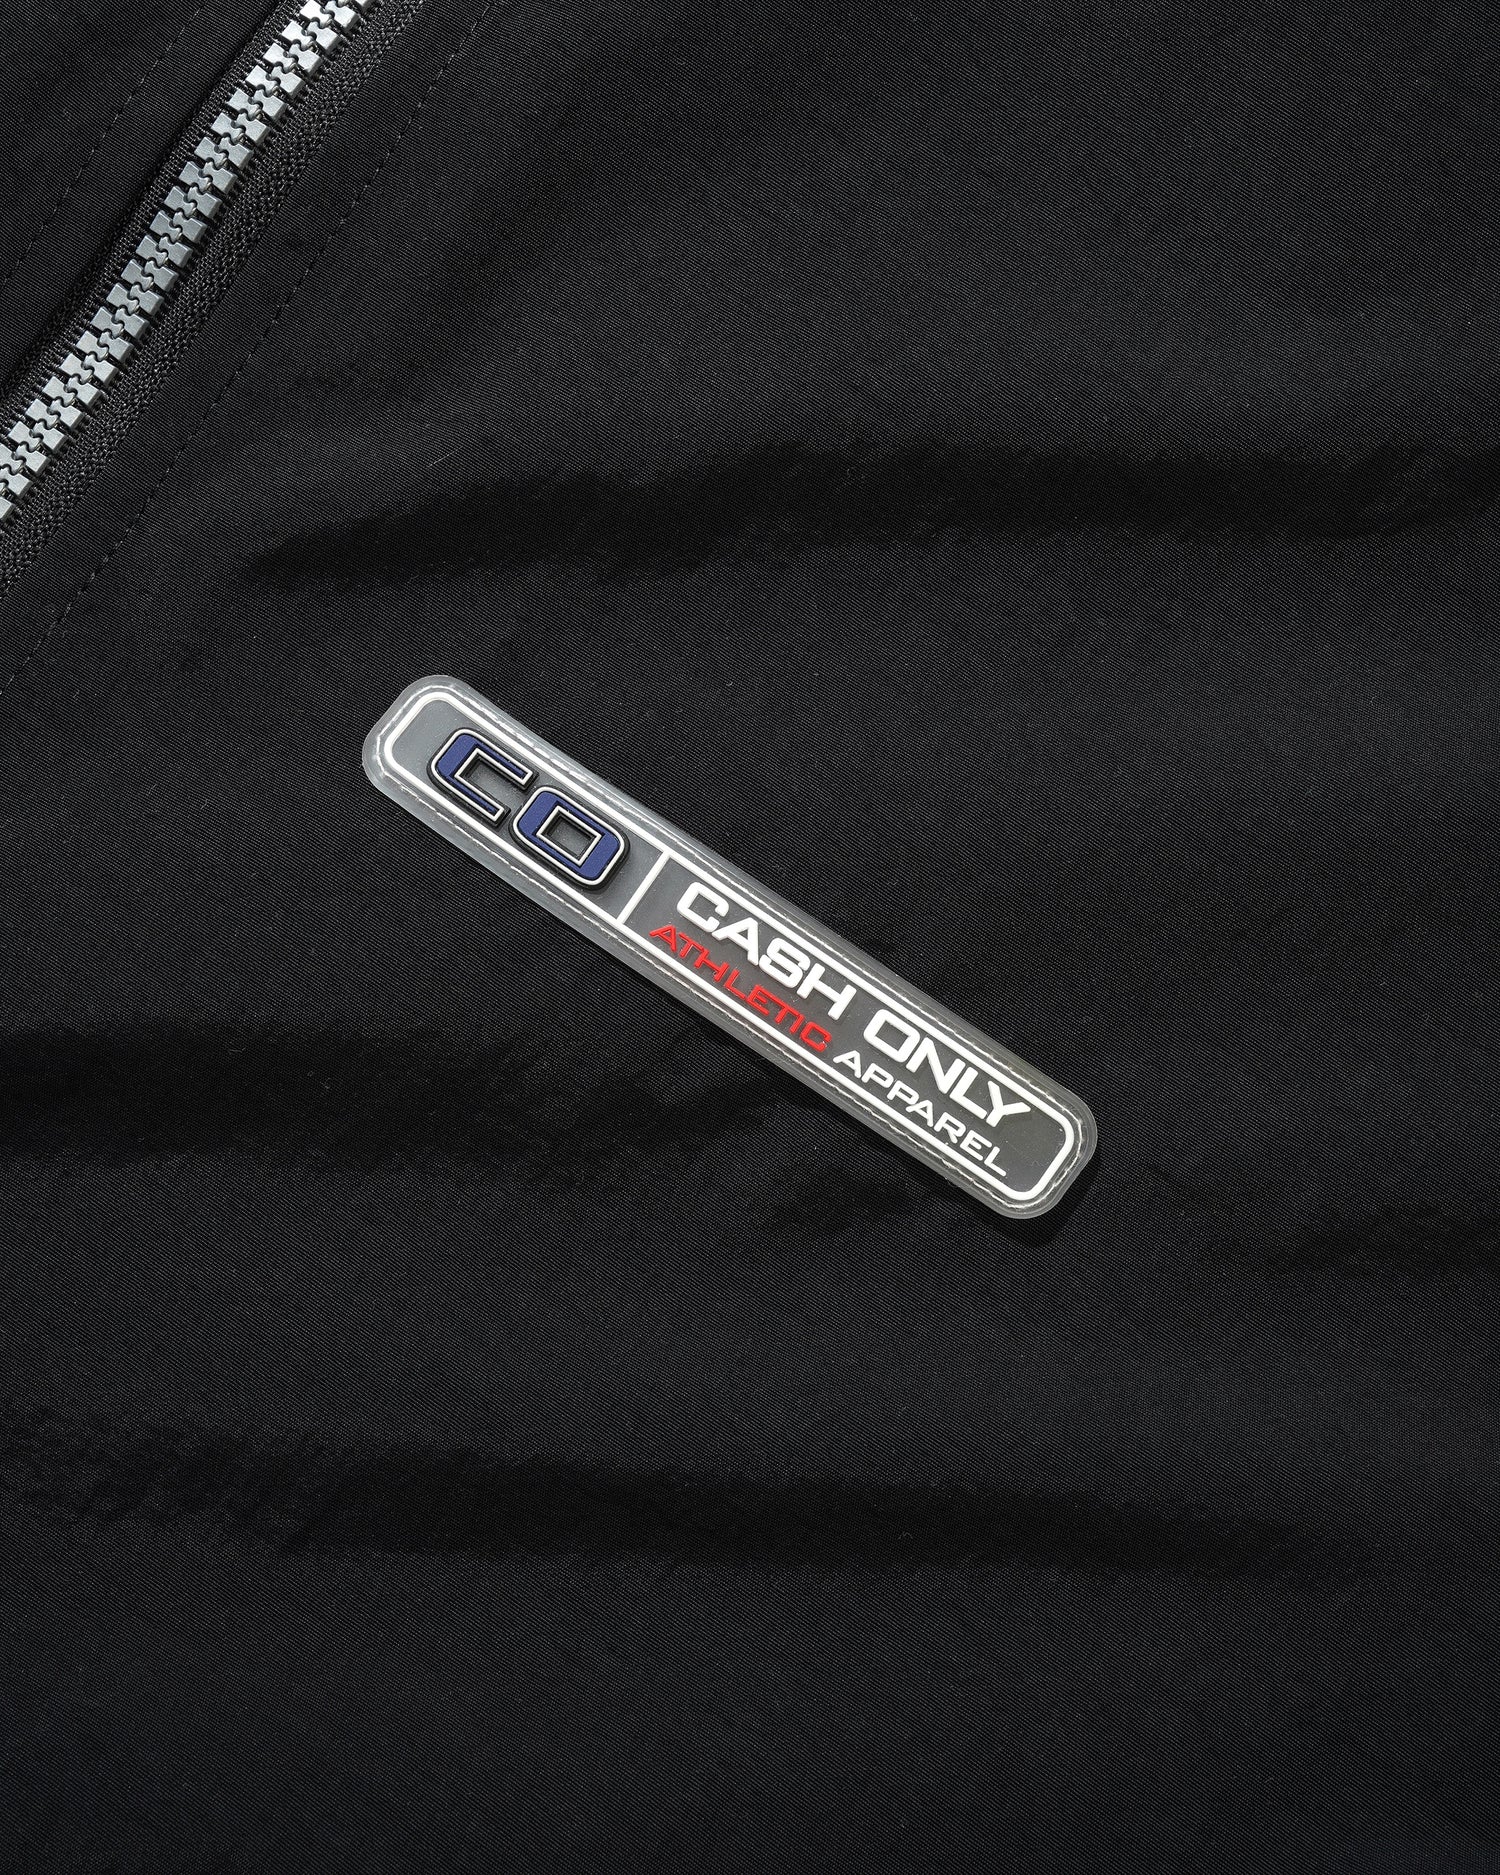 Transit Nylon Jacket, Black / Grey